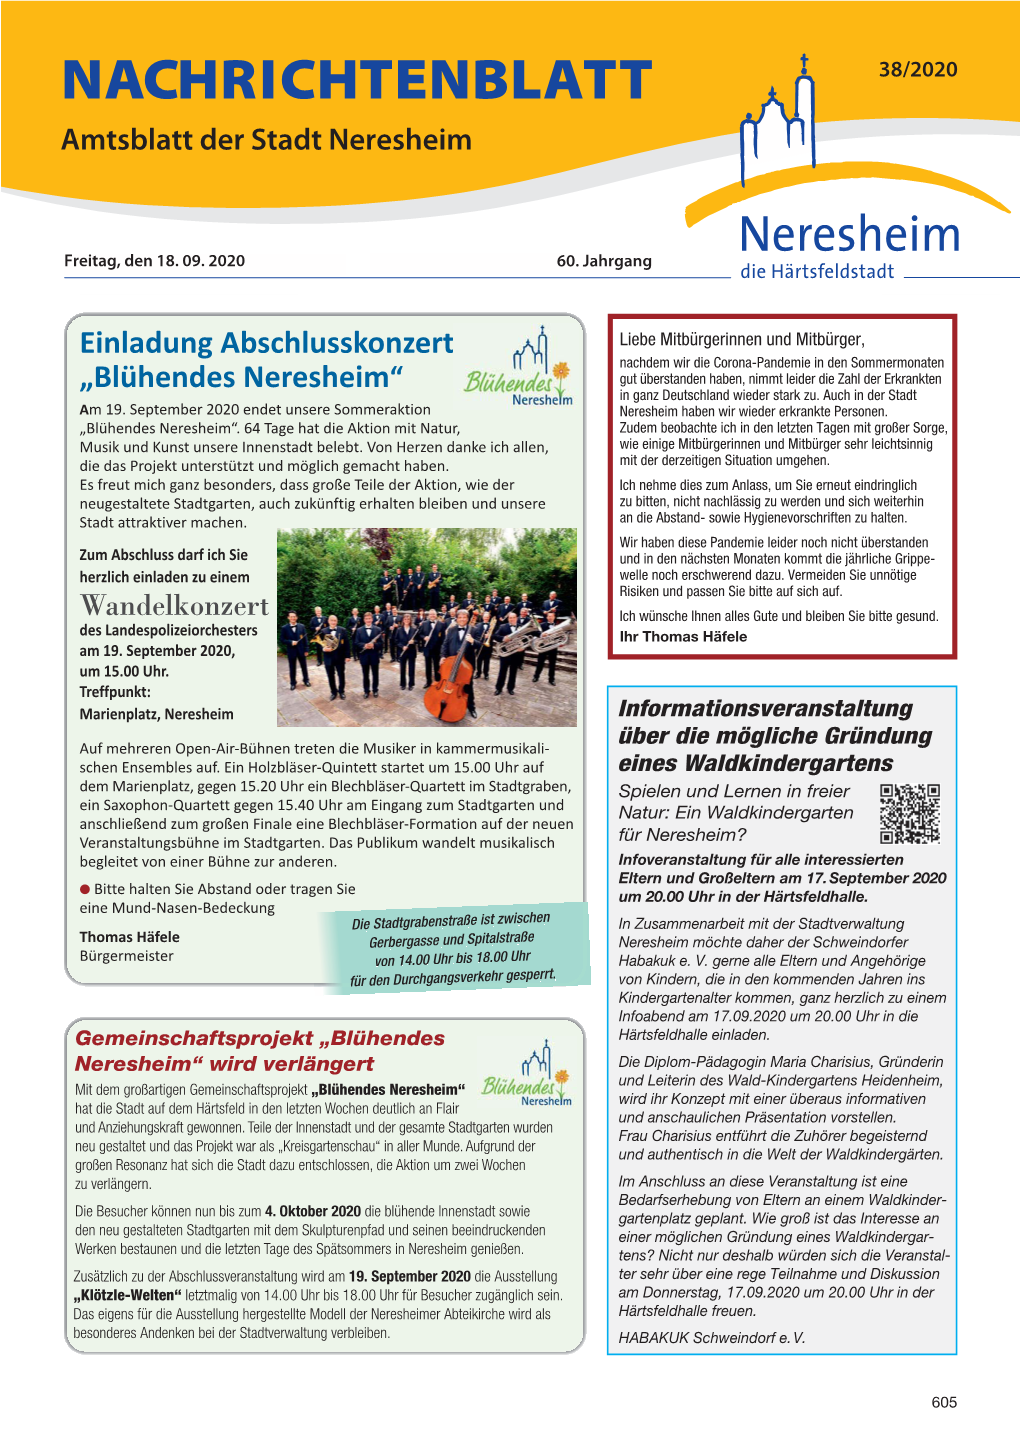 NACHRICHTENBLATT 38/2020 Amtsblatt Der Stadt Neresheim